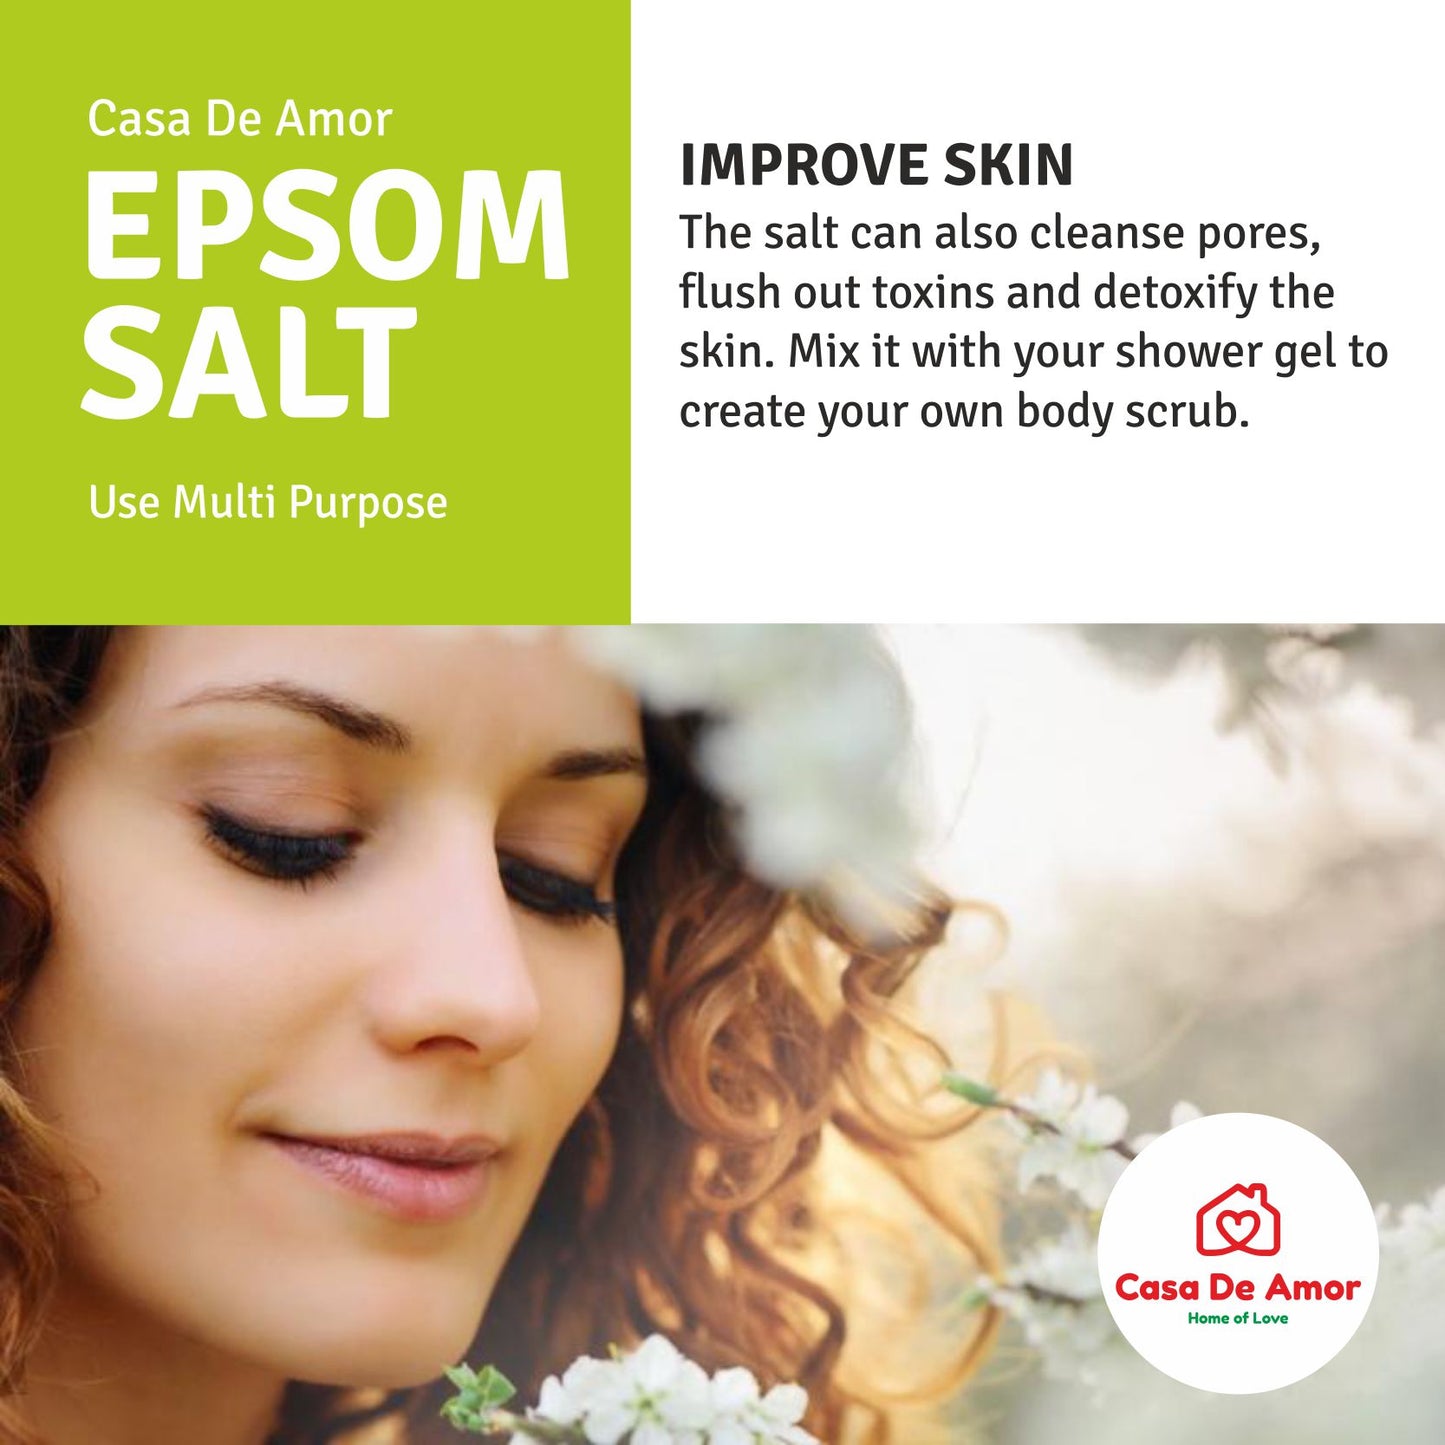 epsom salt benefits for skin